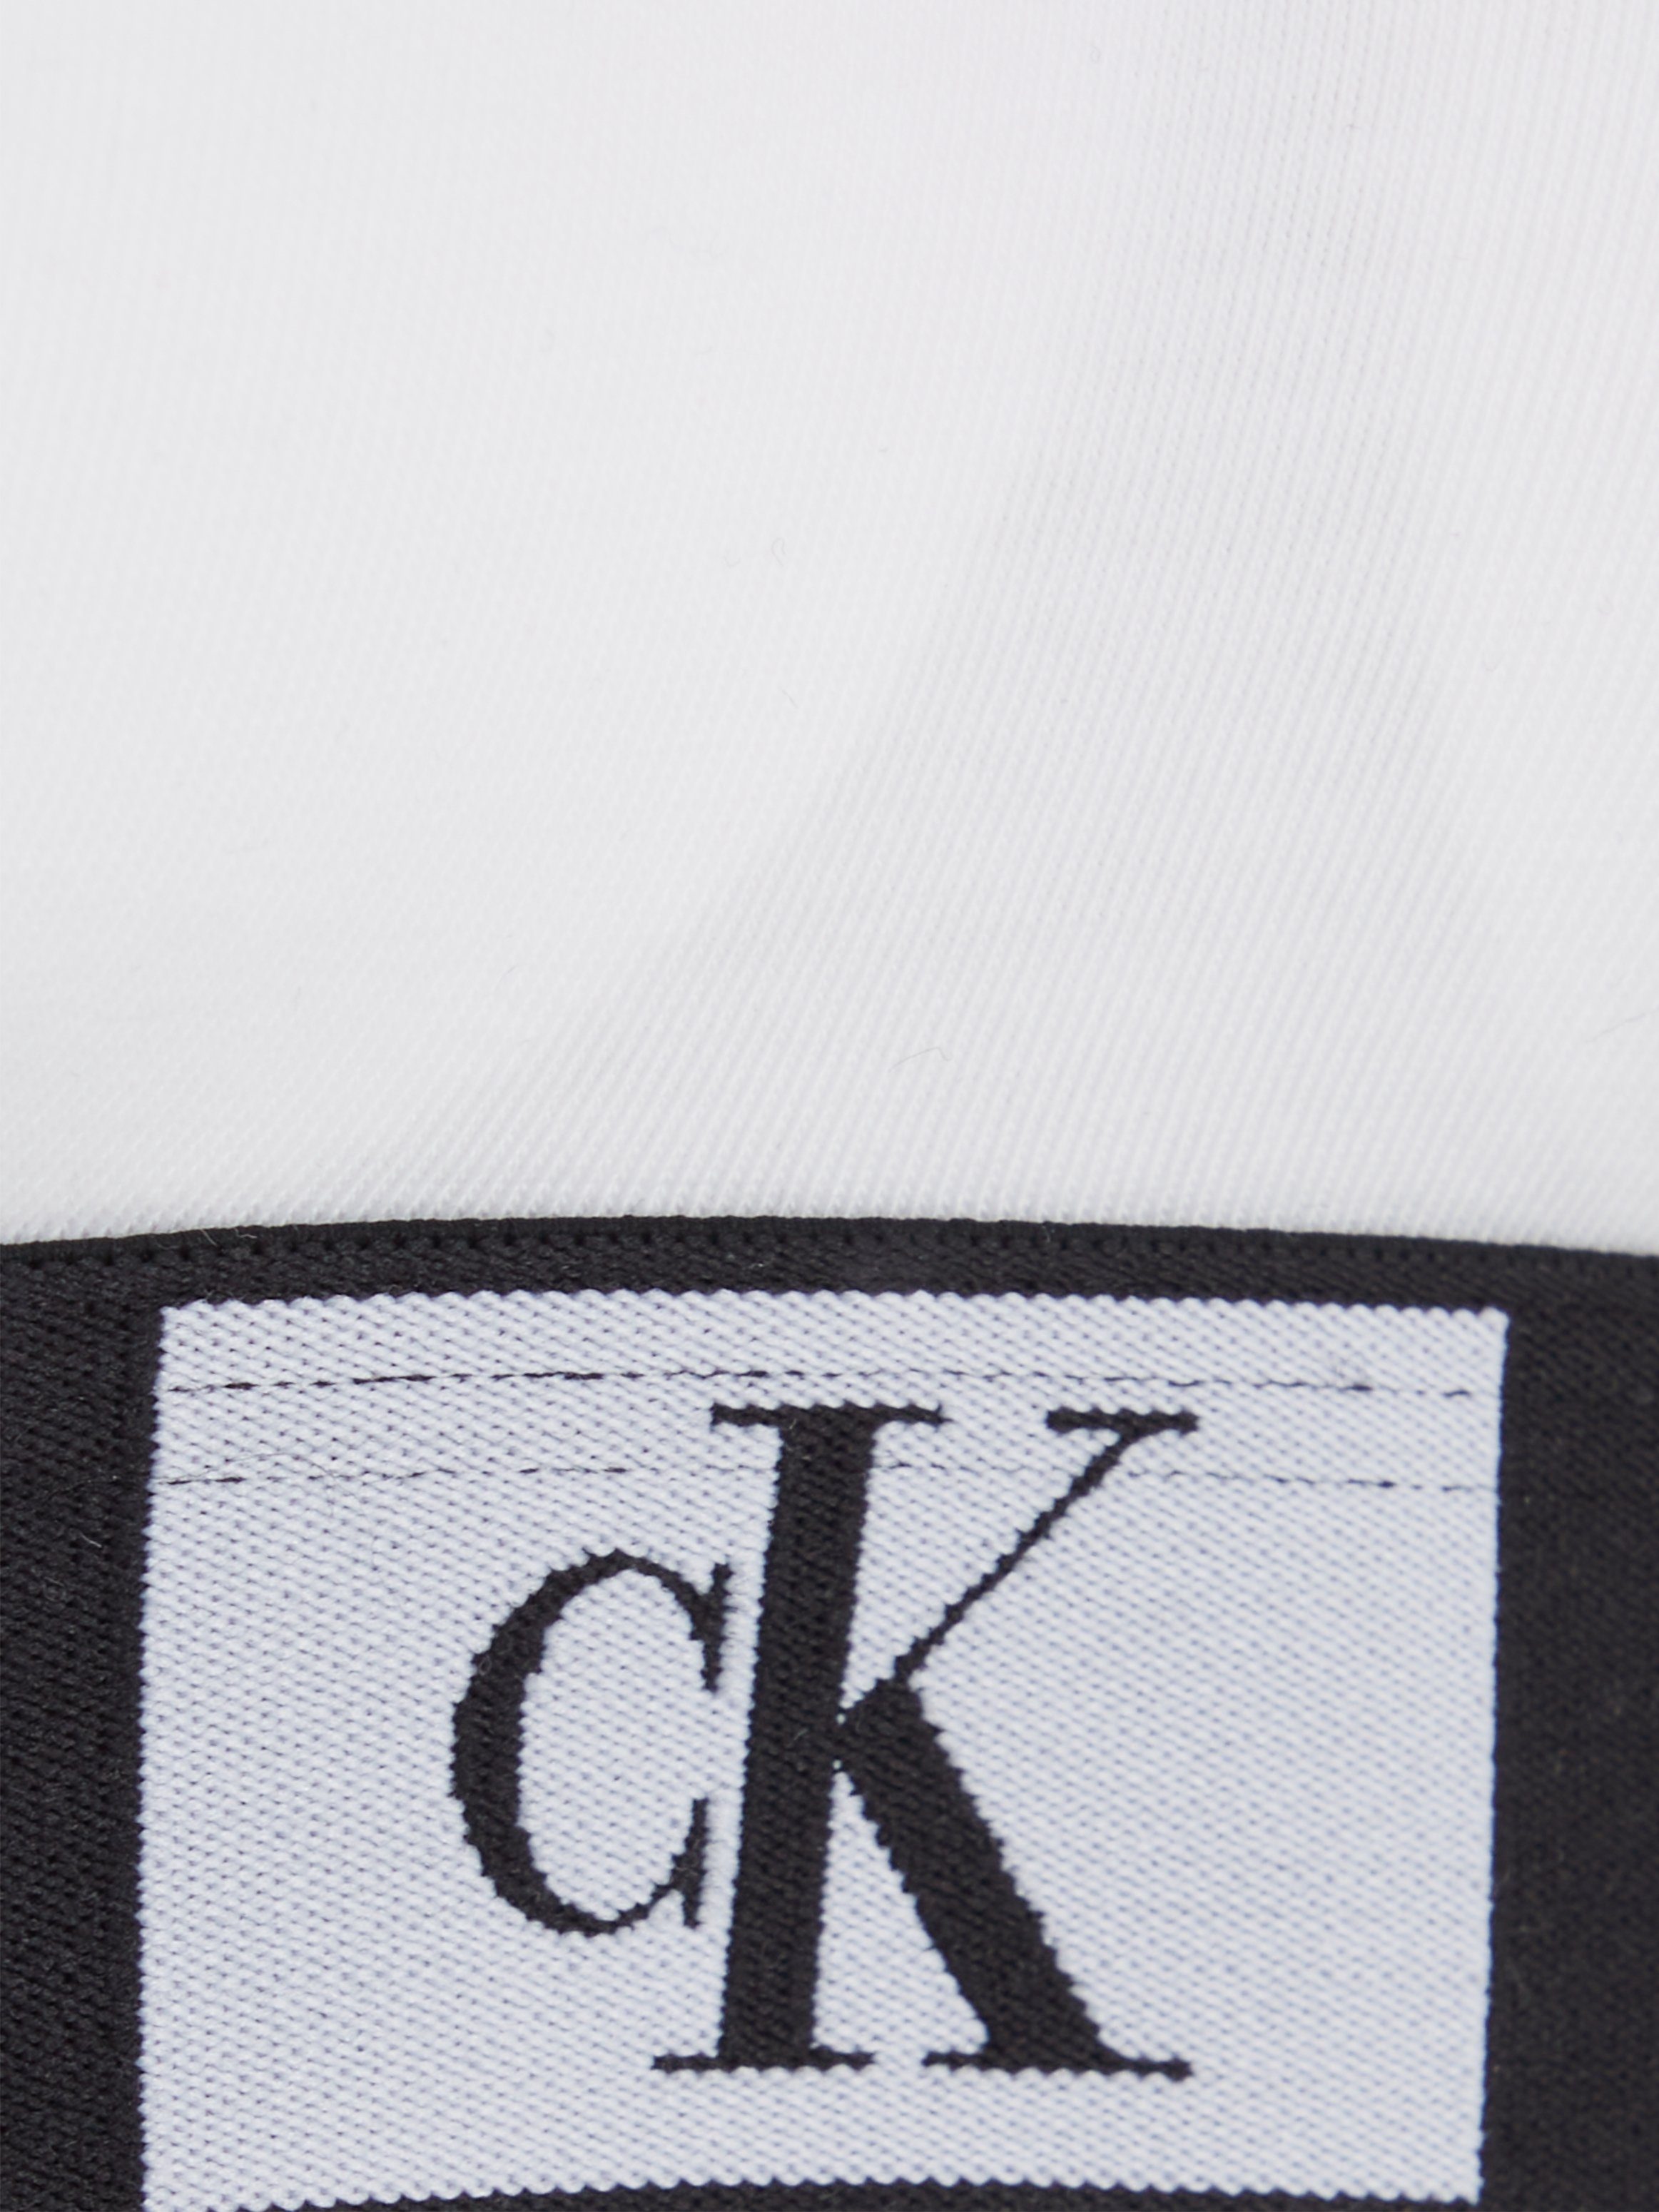 Klein Bralette-BH Underwear weiß klassischem mit Calvin CK-Logobund